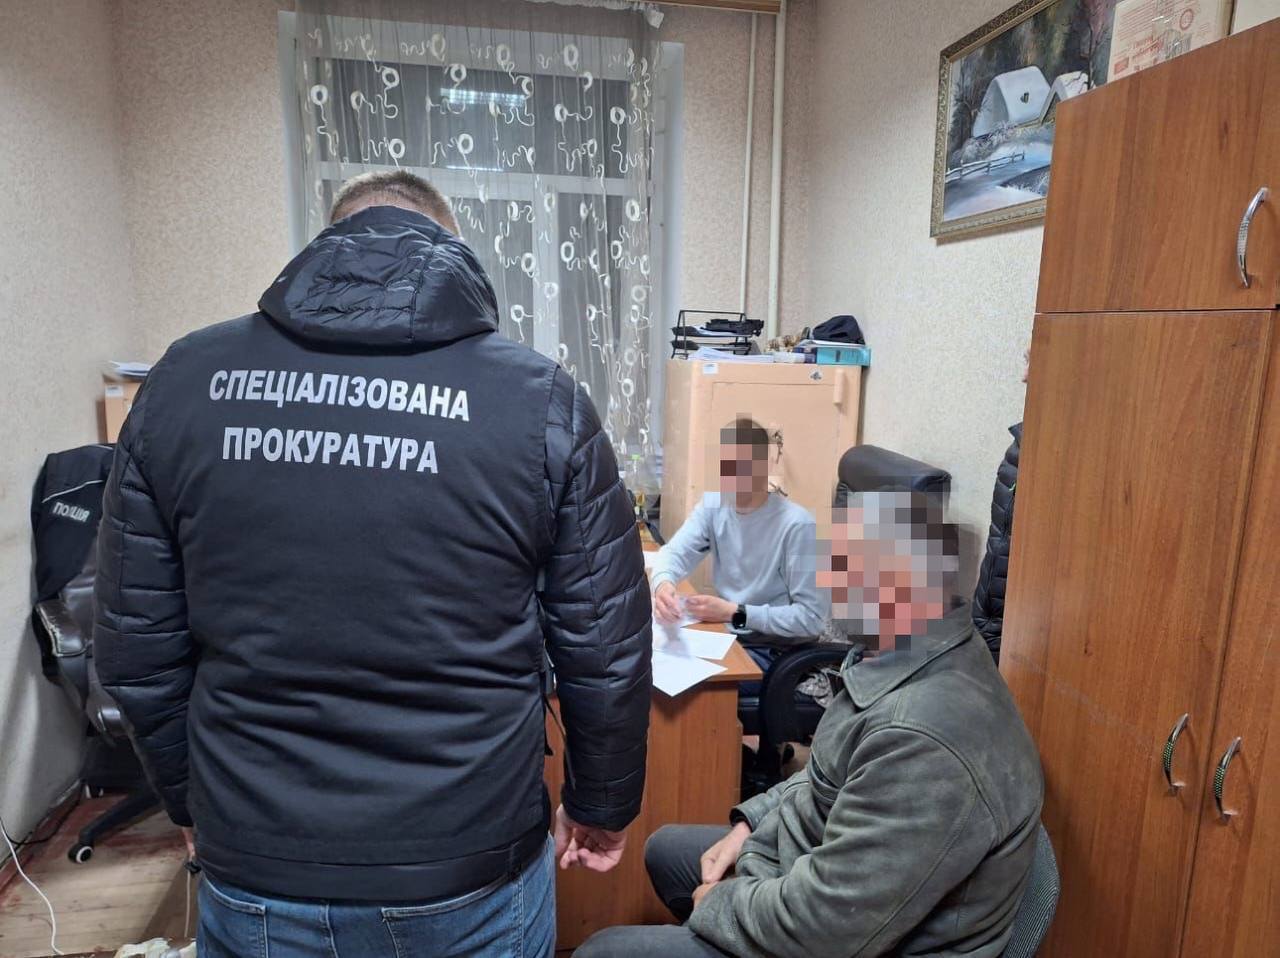 "Орудие убийства изъято": в МВД объяснили, когда изберут меру пресечения напавшим на полицейских в Винницкой области